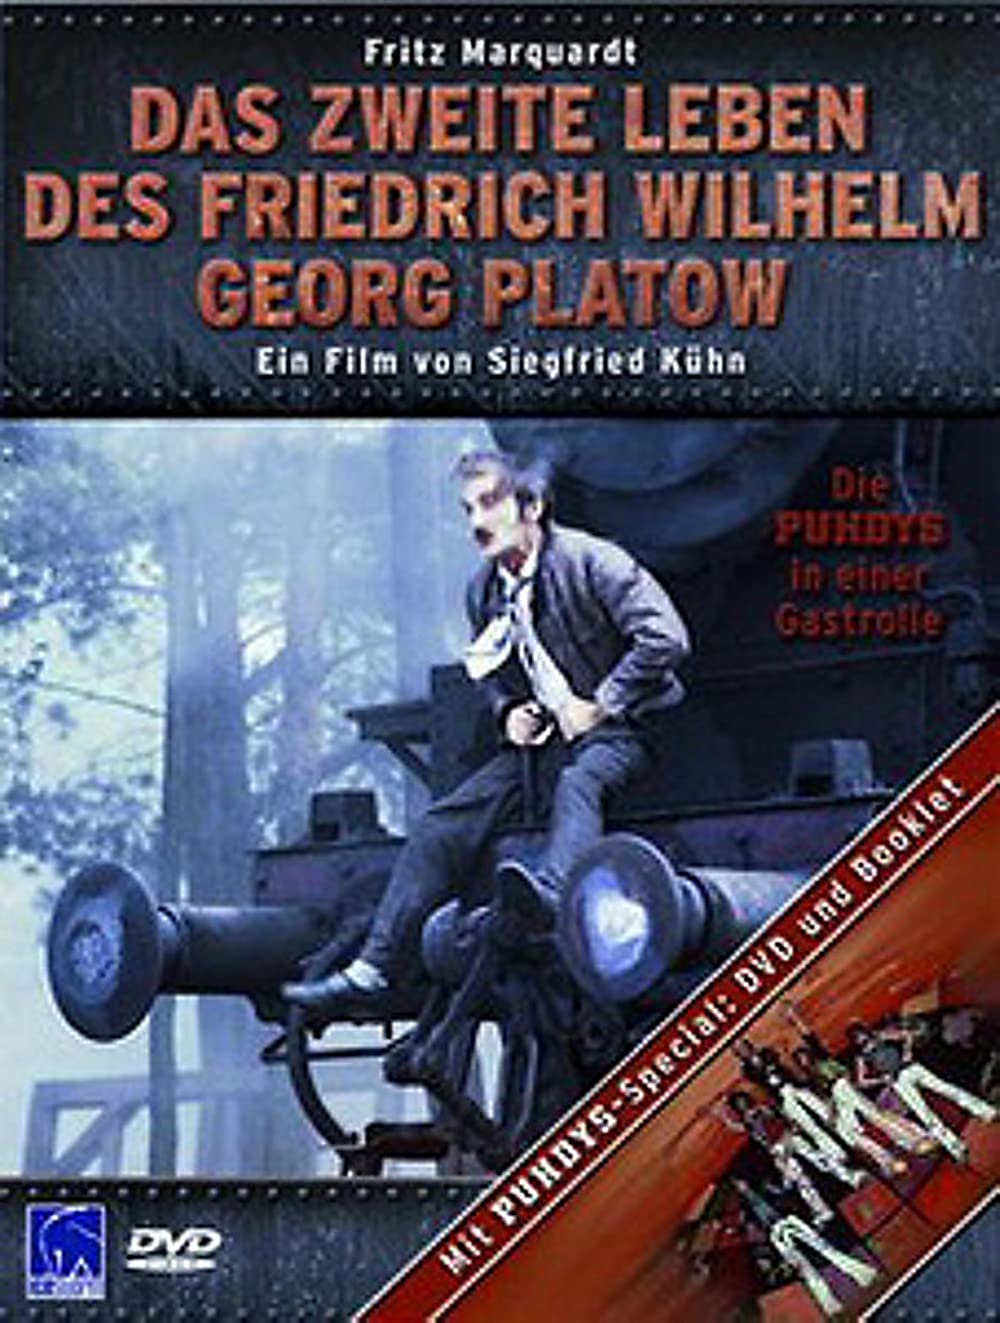 Filmbeschreibung zu Das zweite Leben des Friedrich Wilhelm Georg Platow